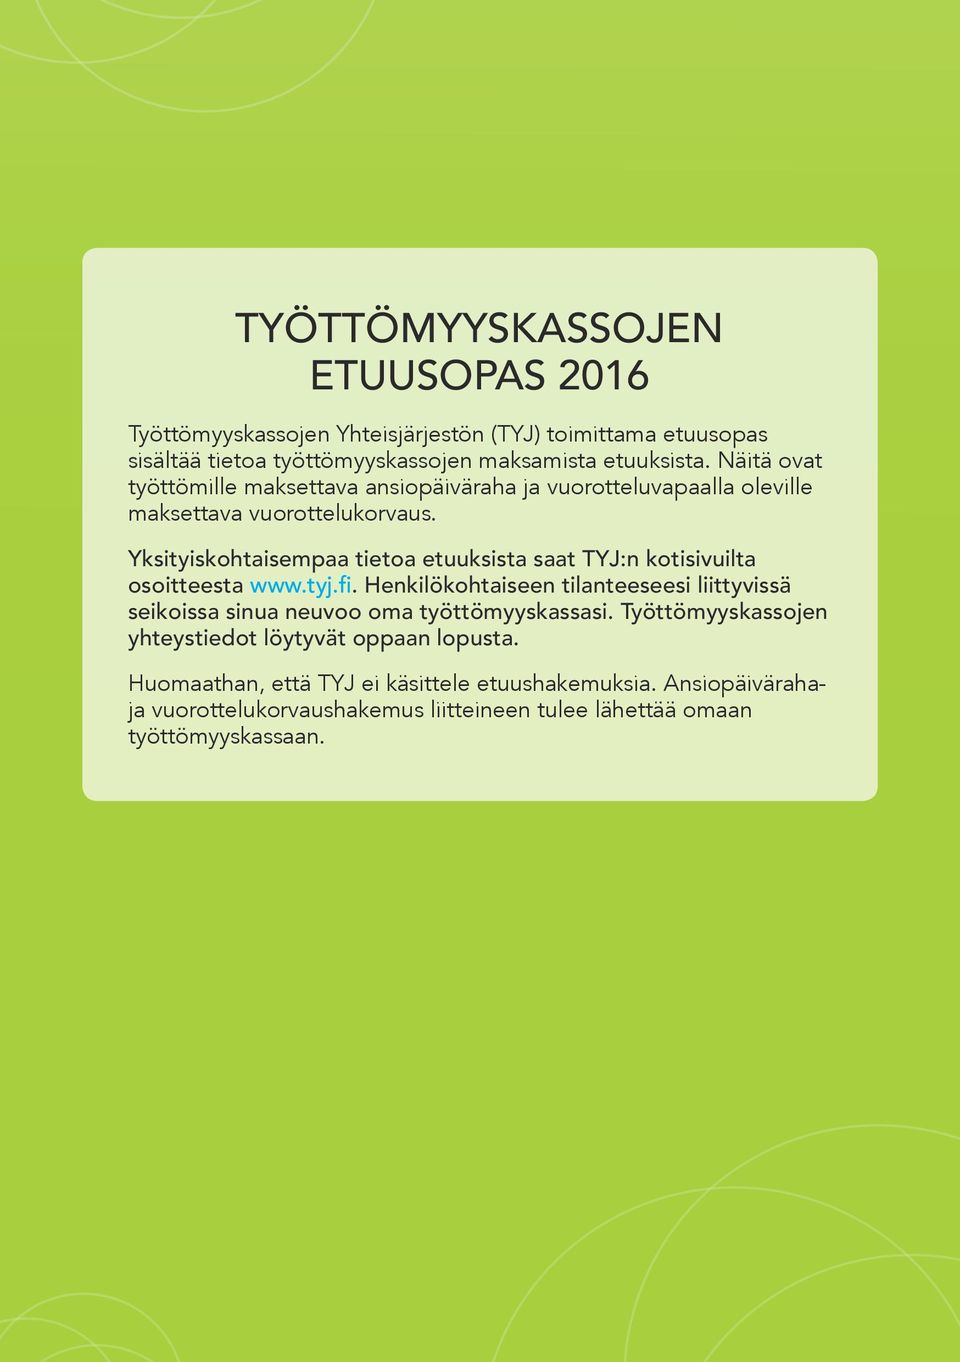 Yksityiskohtaisempaa tietoa etuuksista saat TYJ:n kotisivuilta osoitteesta www.tyj.fi.